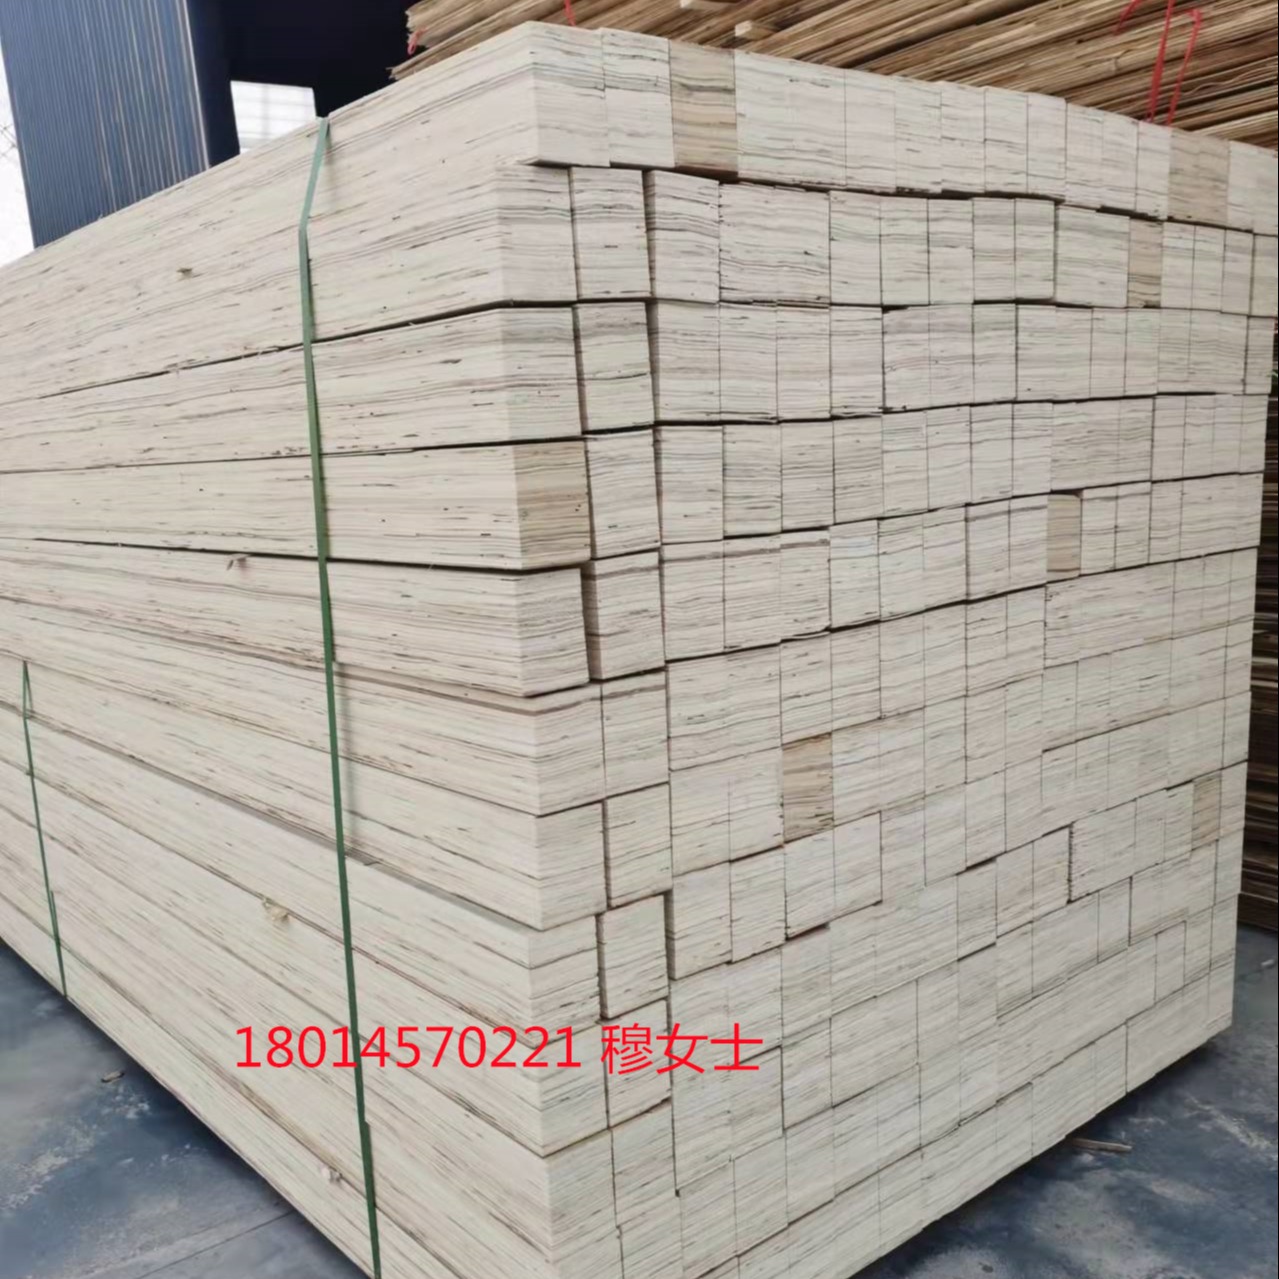 连盛木业供应免熏蒸LVL顺向板 优质杨木单板层积材 床架条沙发木龙骨